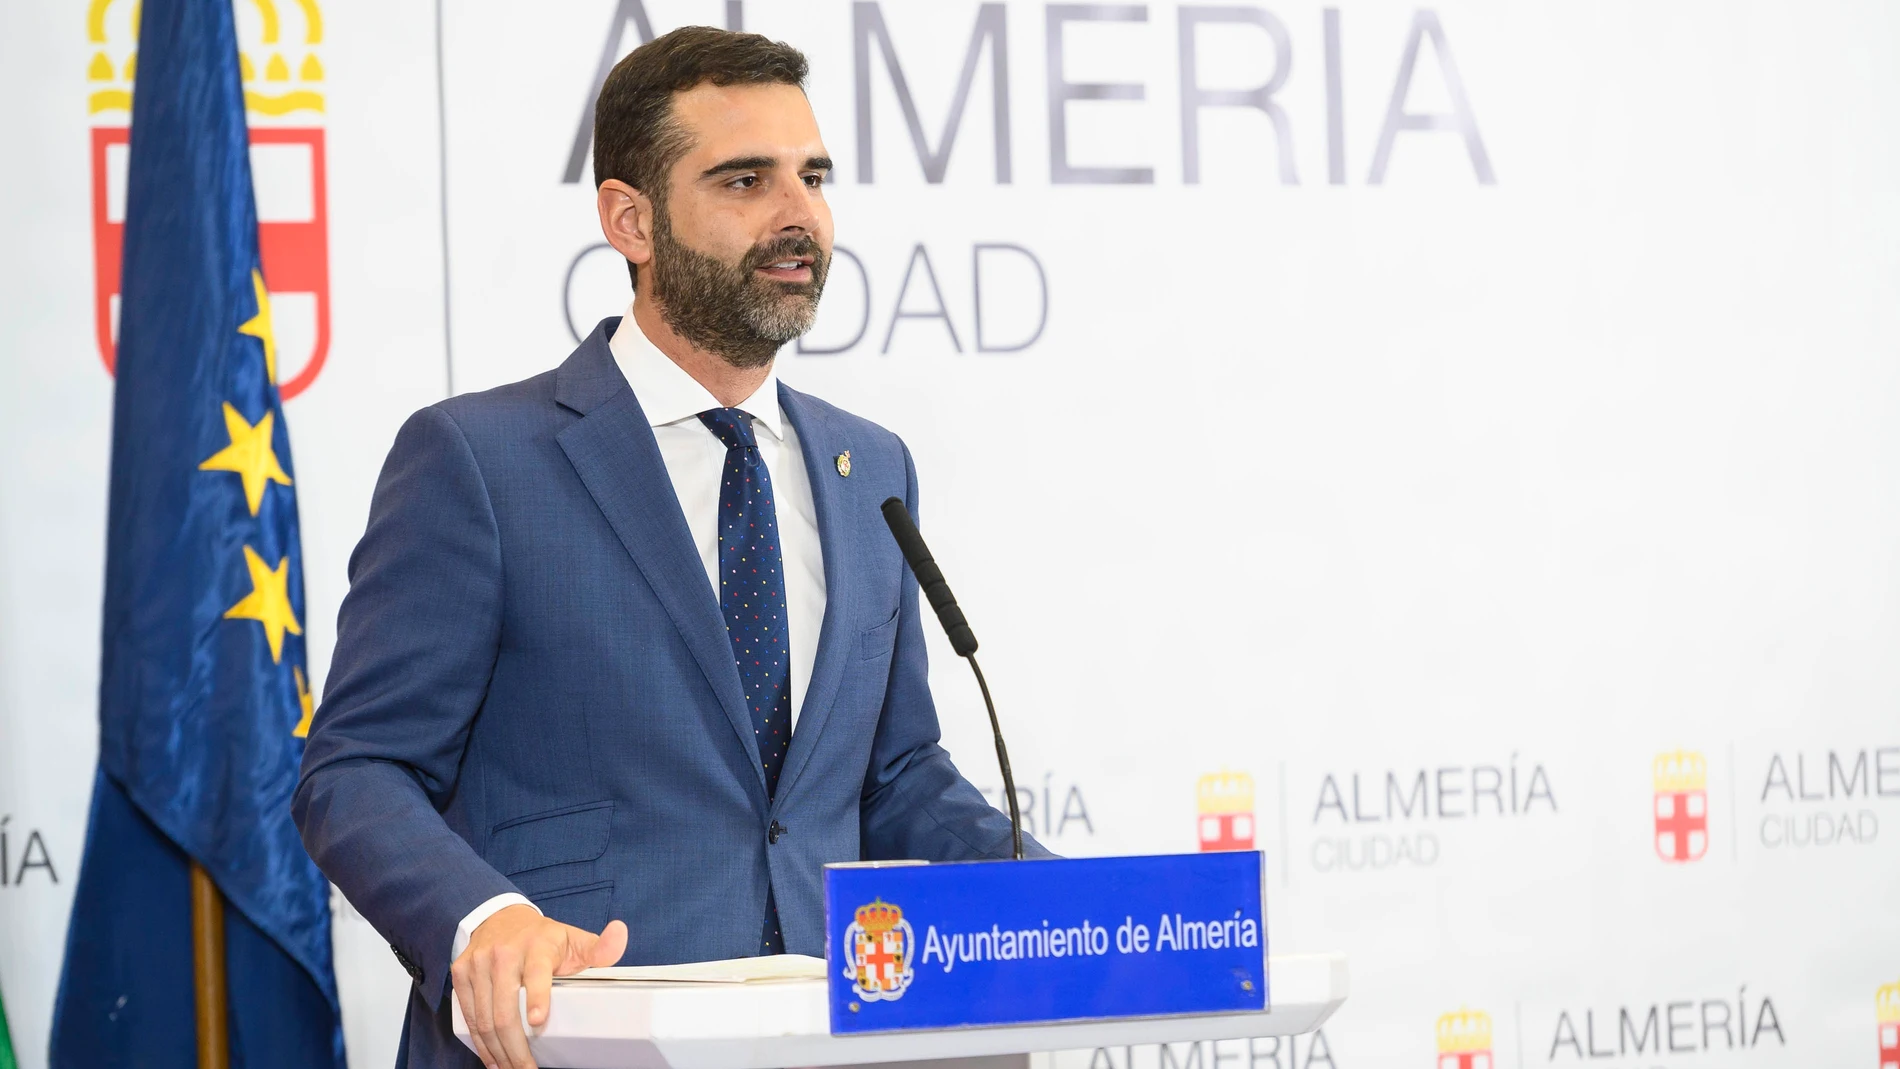 Almería.-Coronavirus.-El alcalde pide al Gobierno que "rectifique" al descontar 152.000 euros de la liquidación de 2017